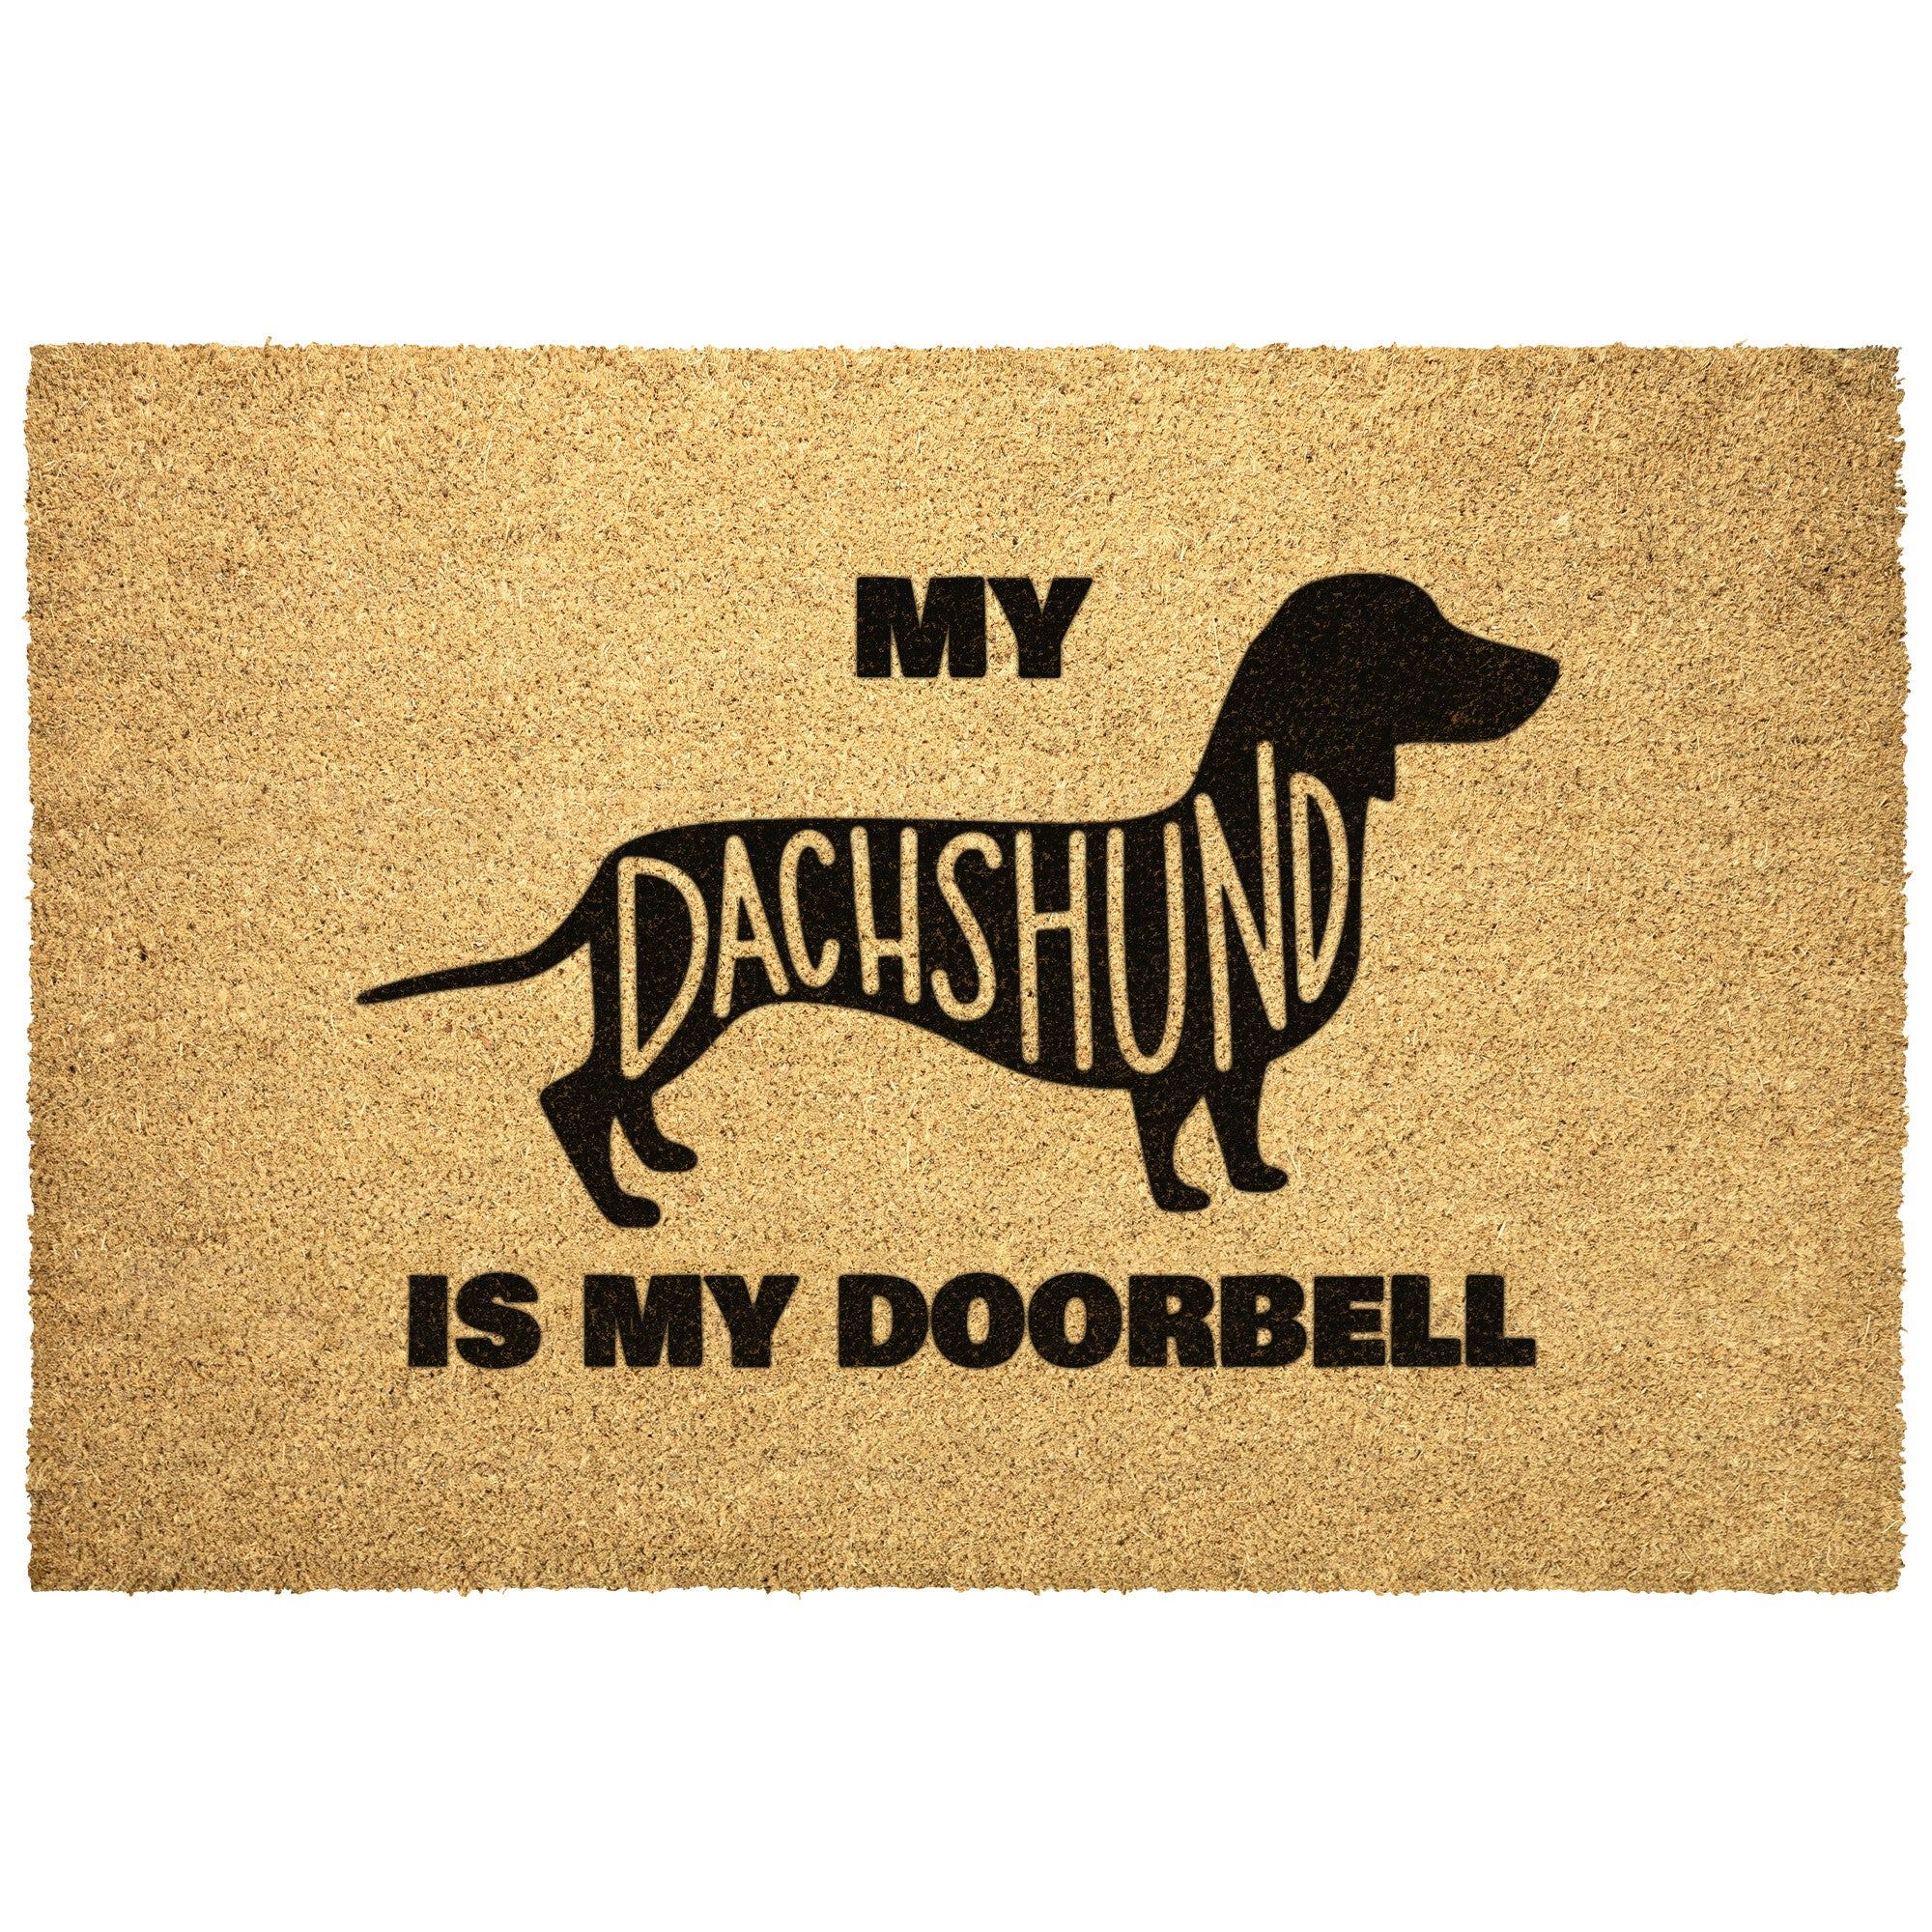 My Dachshund is my Doorbell Outdoor Door Mat